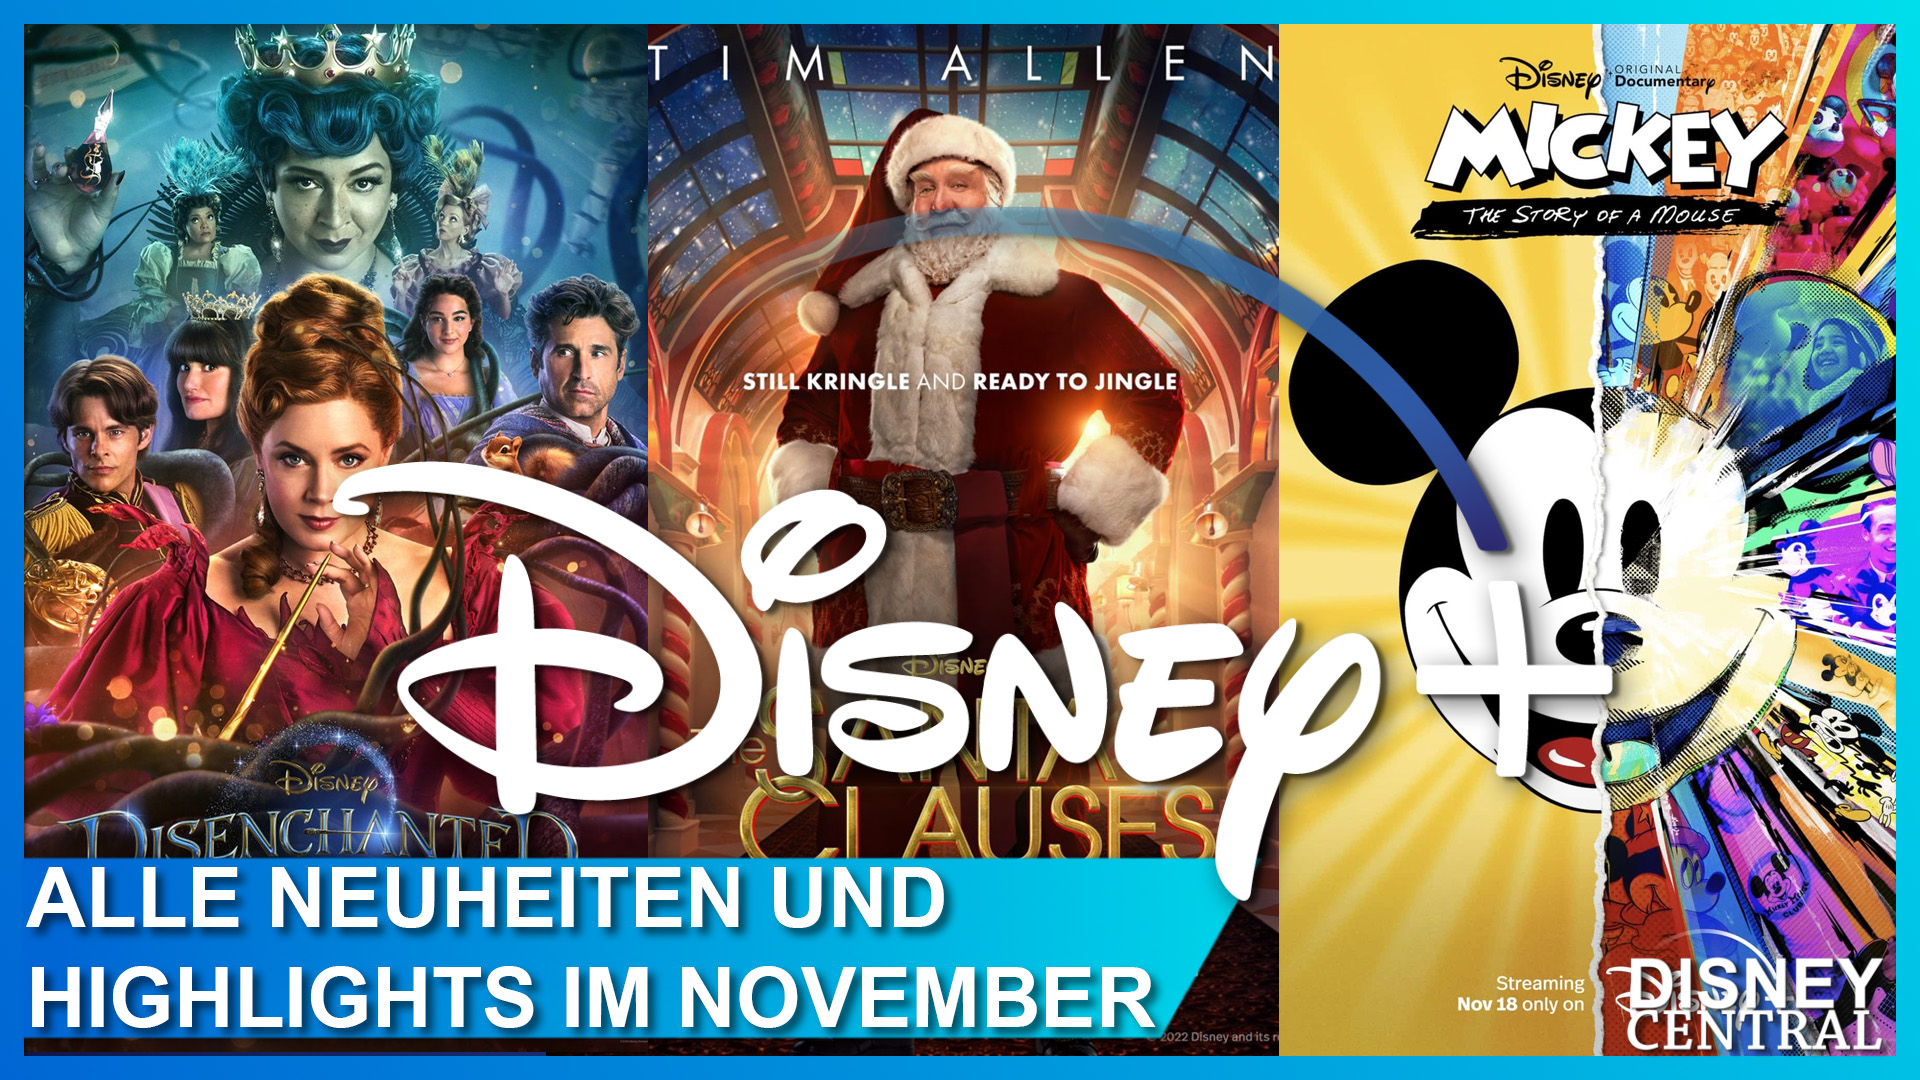 Disney+ Streaming Neuheiten im November 2022: Verwünscht nochmal, Santa Clause: Die Serie, Micky: Die Geschichte einer Maus und mehr!